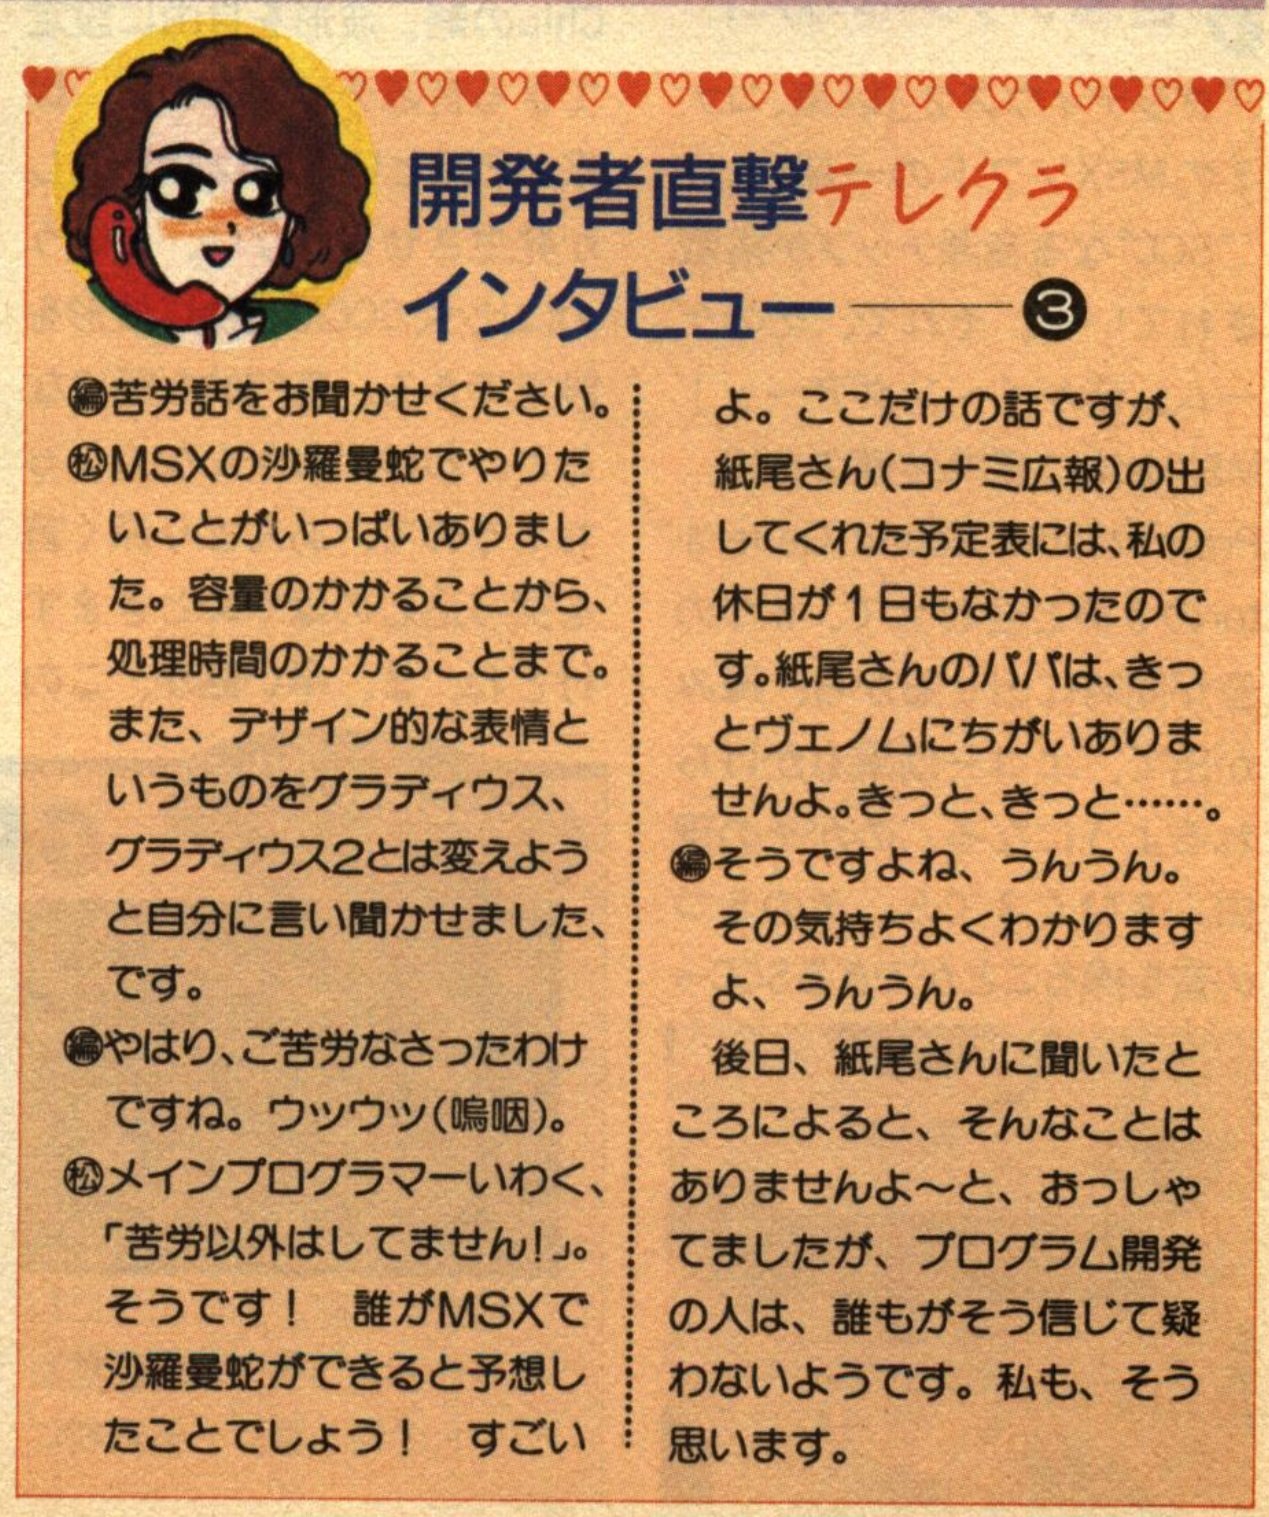 蛇metal A Phone Dating Interview With Konami Developer Naoki Matsui That Was Published In The Msx Tsushin Pamphlet Included In The Jan 19 Issue Of Login Magazine My Translation T Co I5yfd6lvxy